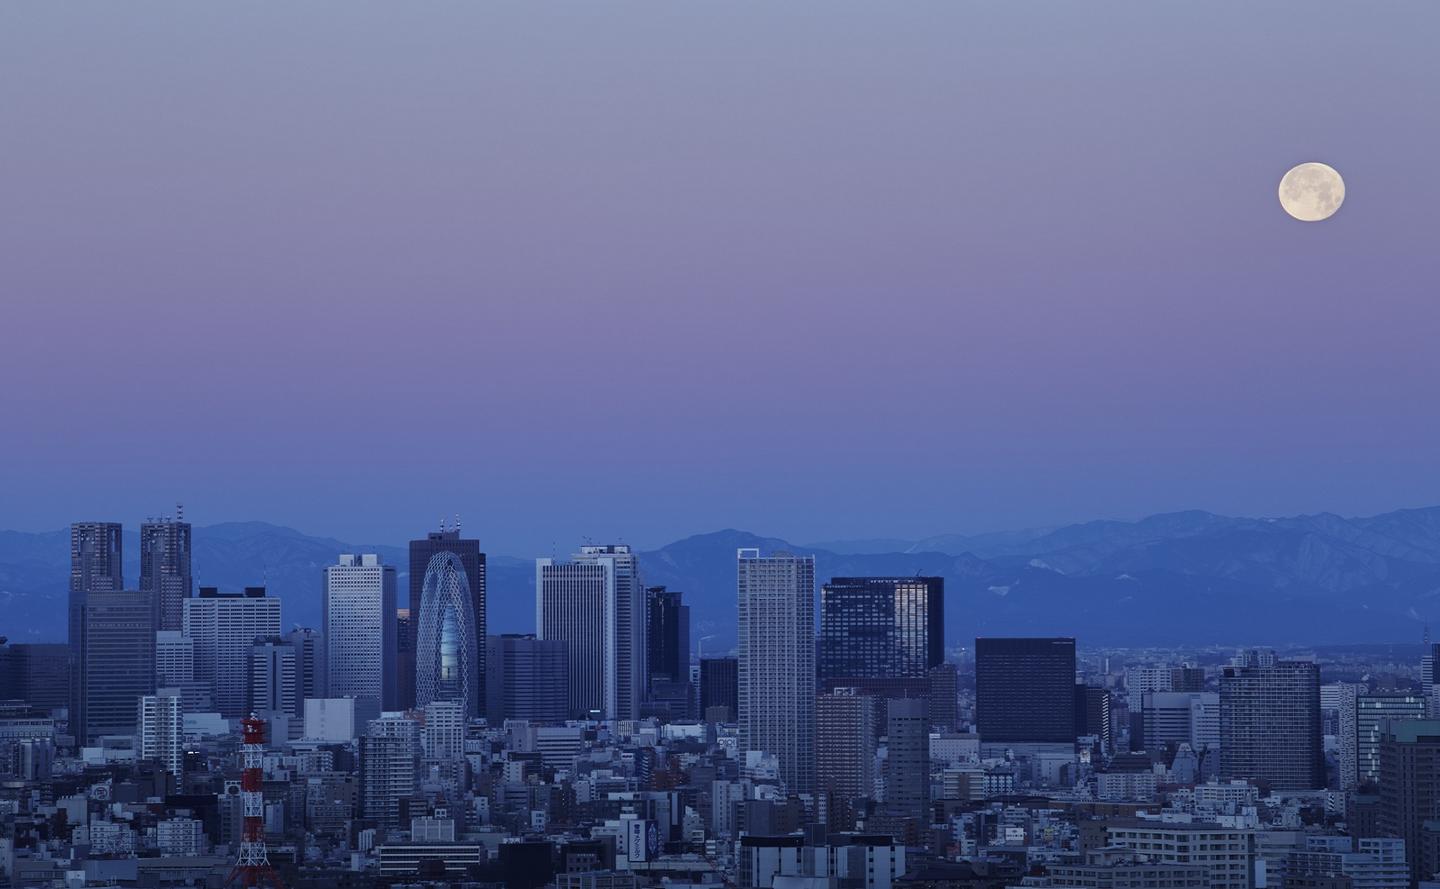 Aman Tokyo, Japan - Skyline Views at Dusk